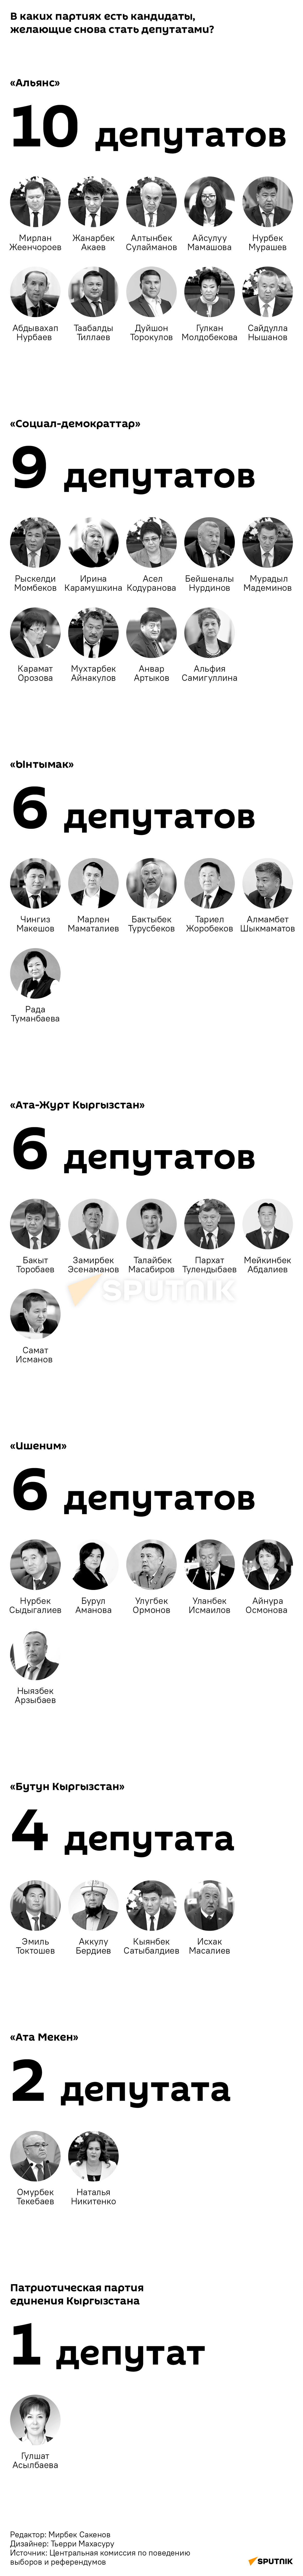 В каких партиях есть кандидаты, желающие снова стать депутатами? - Sputnik Кыргызстан